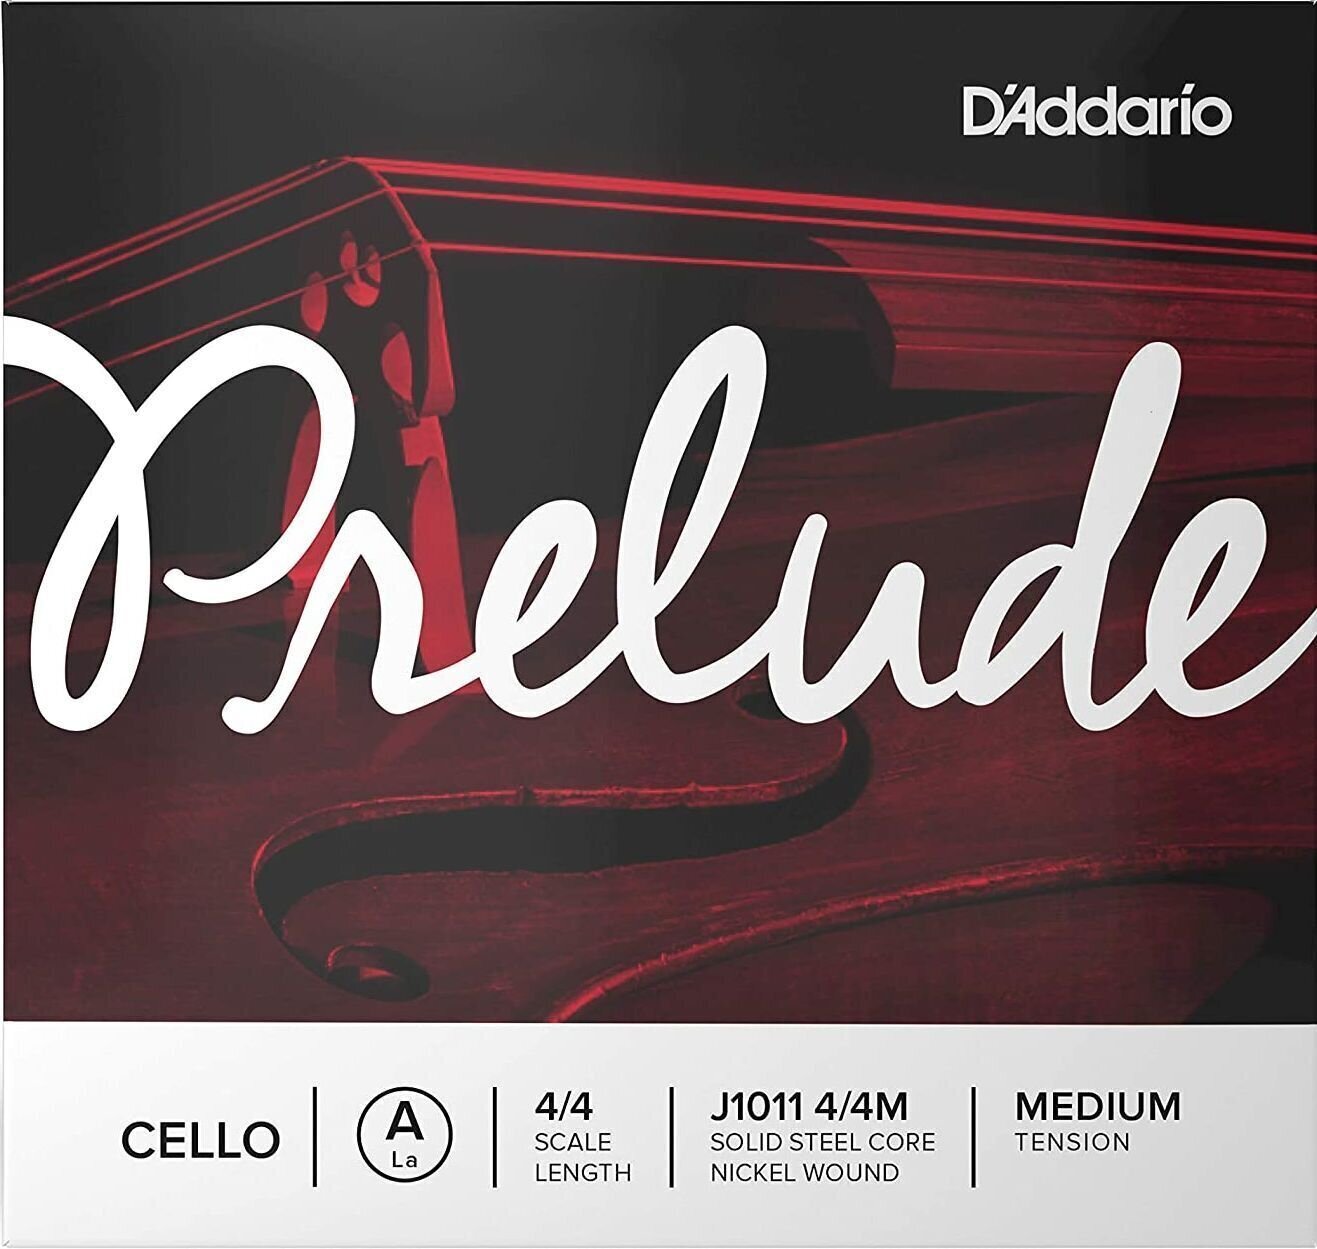 Cello Strings D'Addario J1011 4/4M Prelude Cello Strings